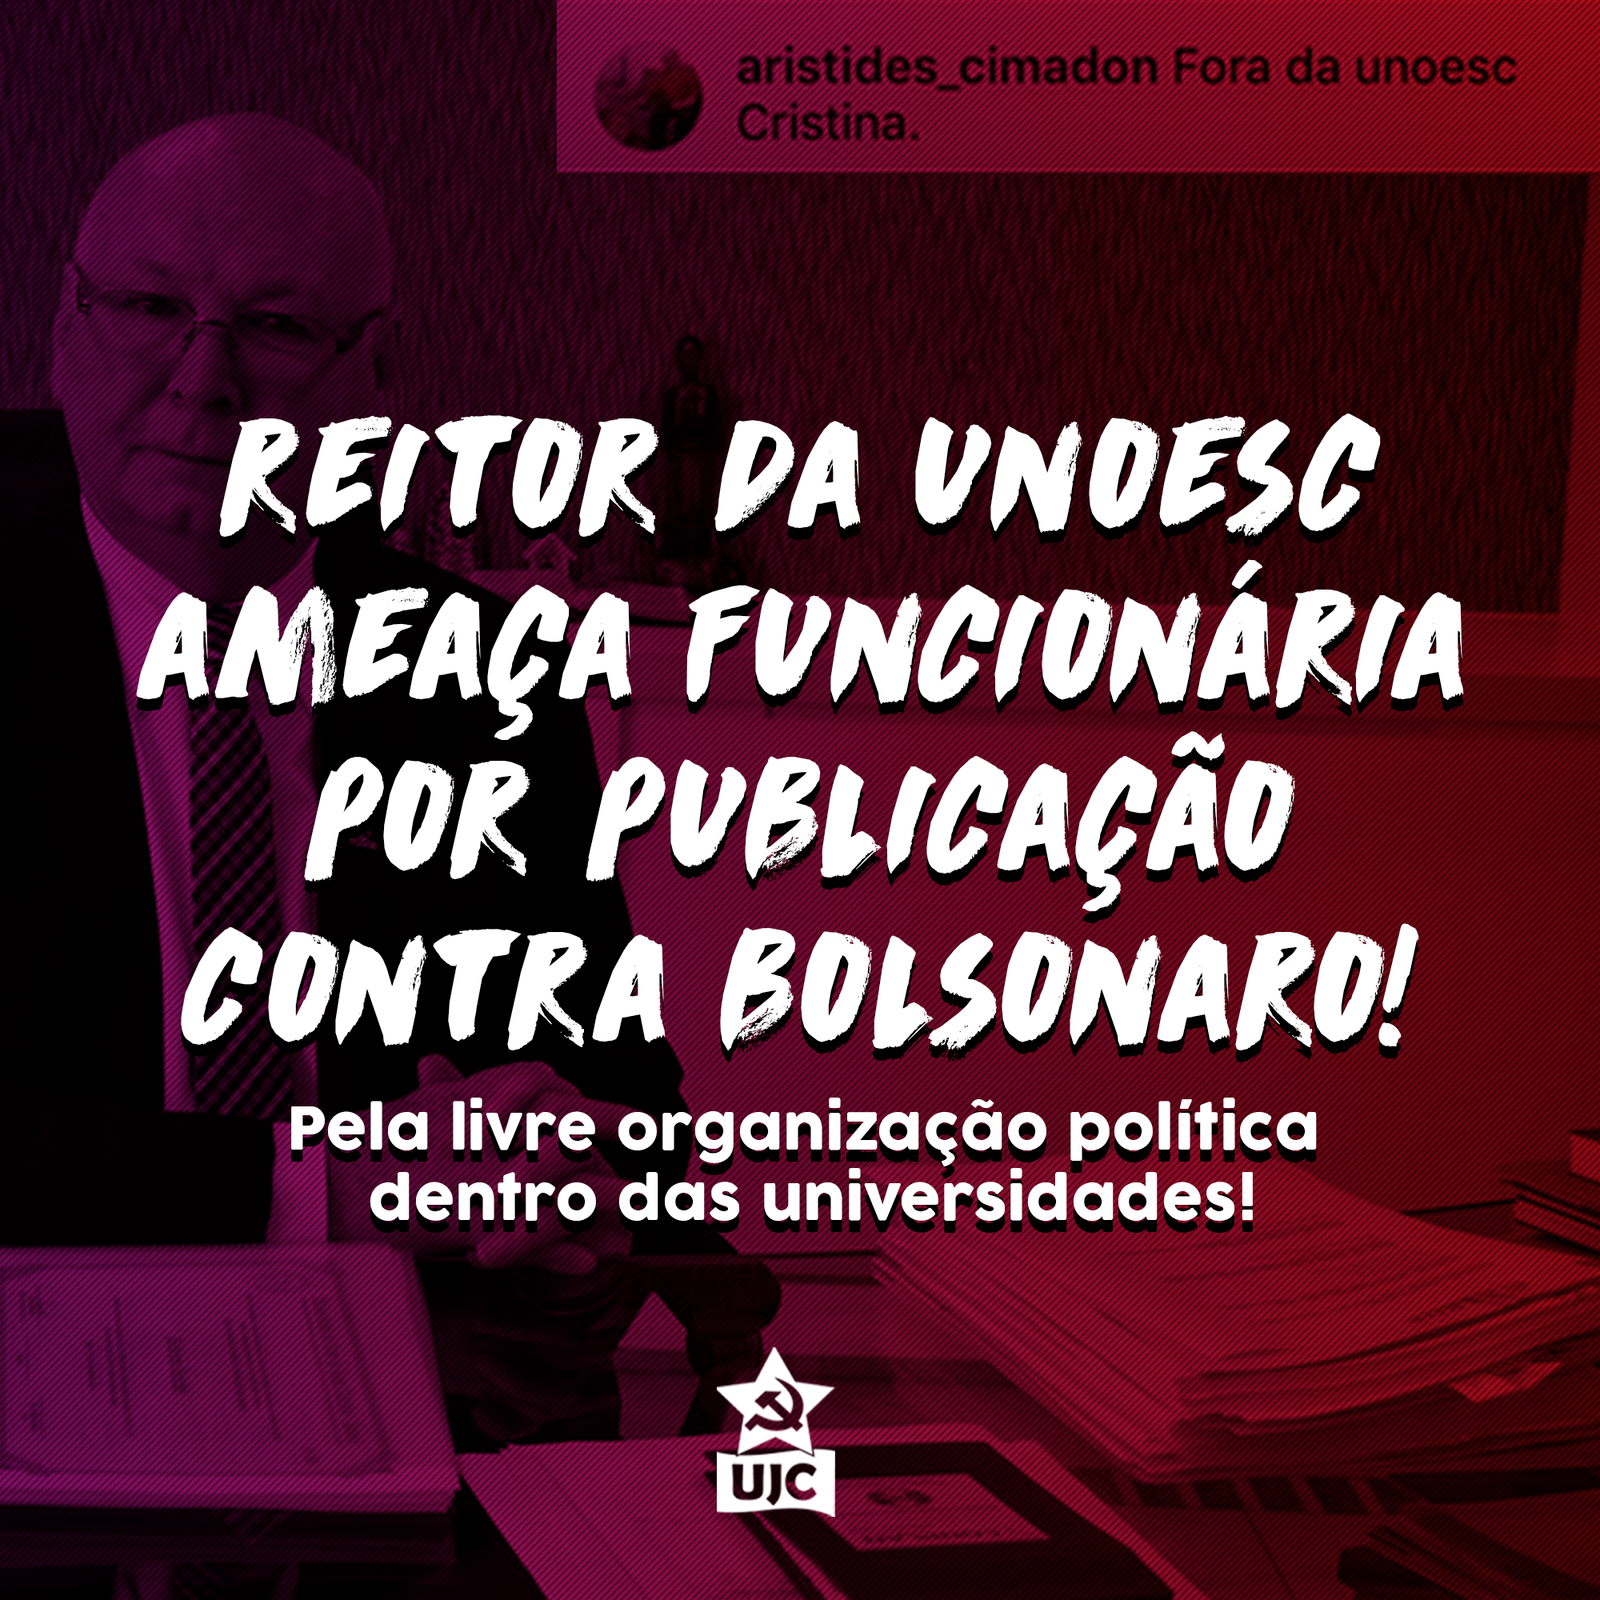 Nota Política da UJC Santa Catarina – Reitor da UNOESC ameaça funcionária por publicação contra Bolsonaro!